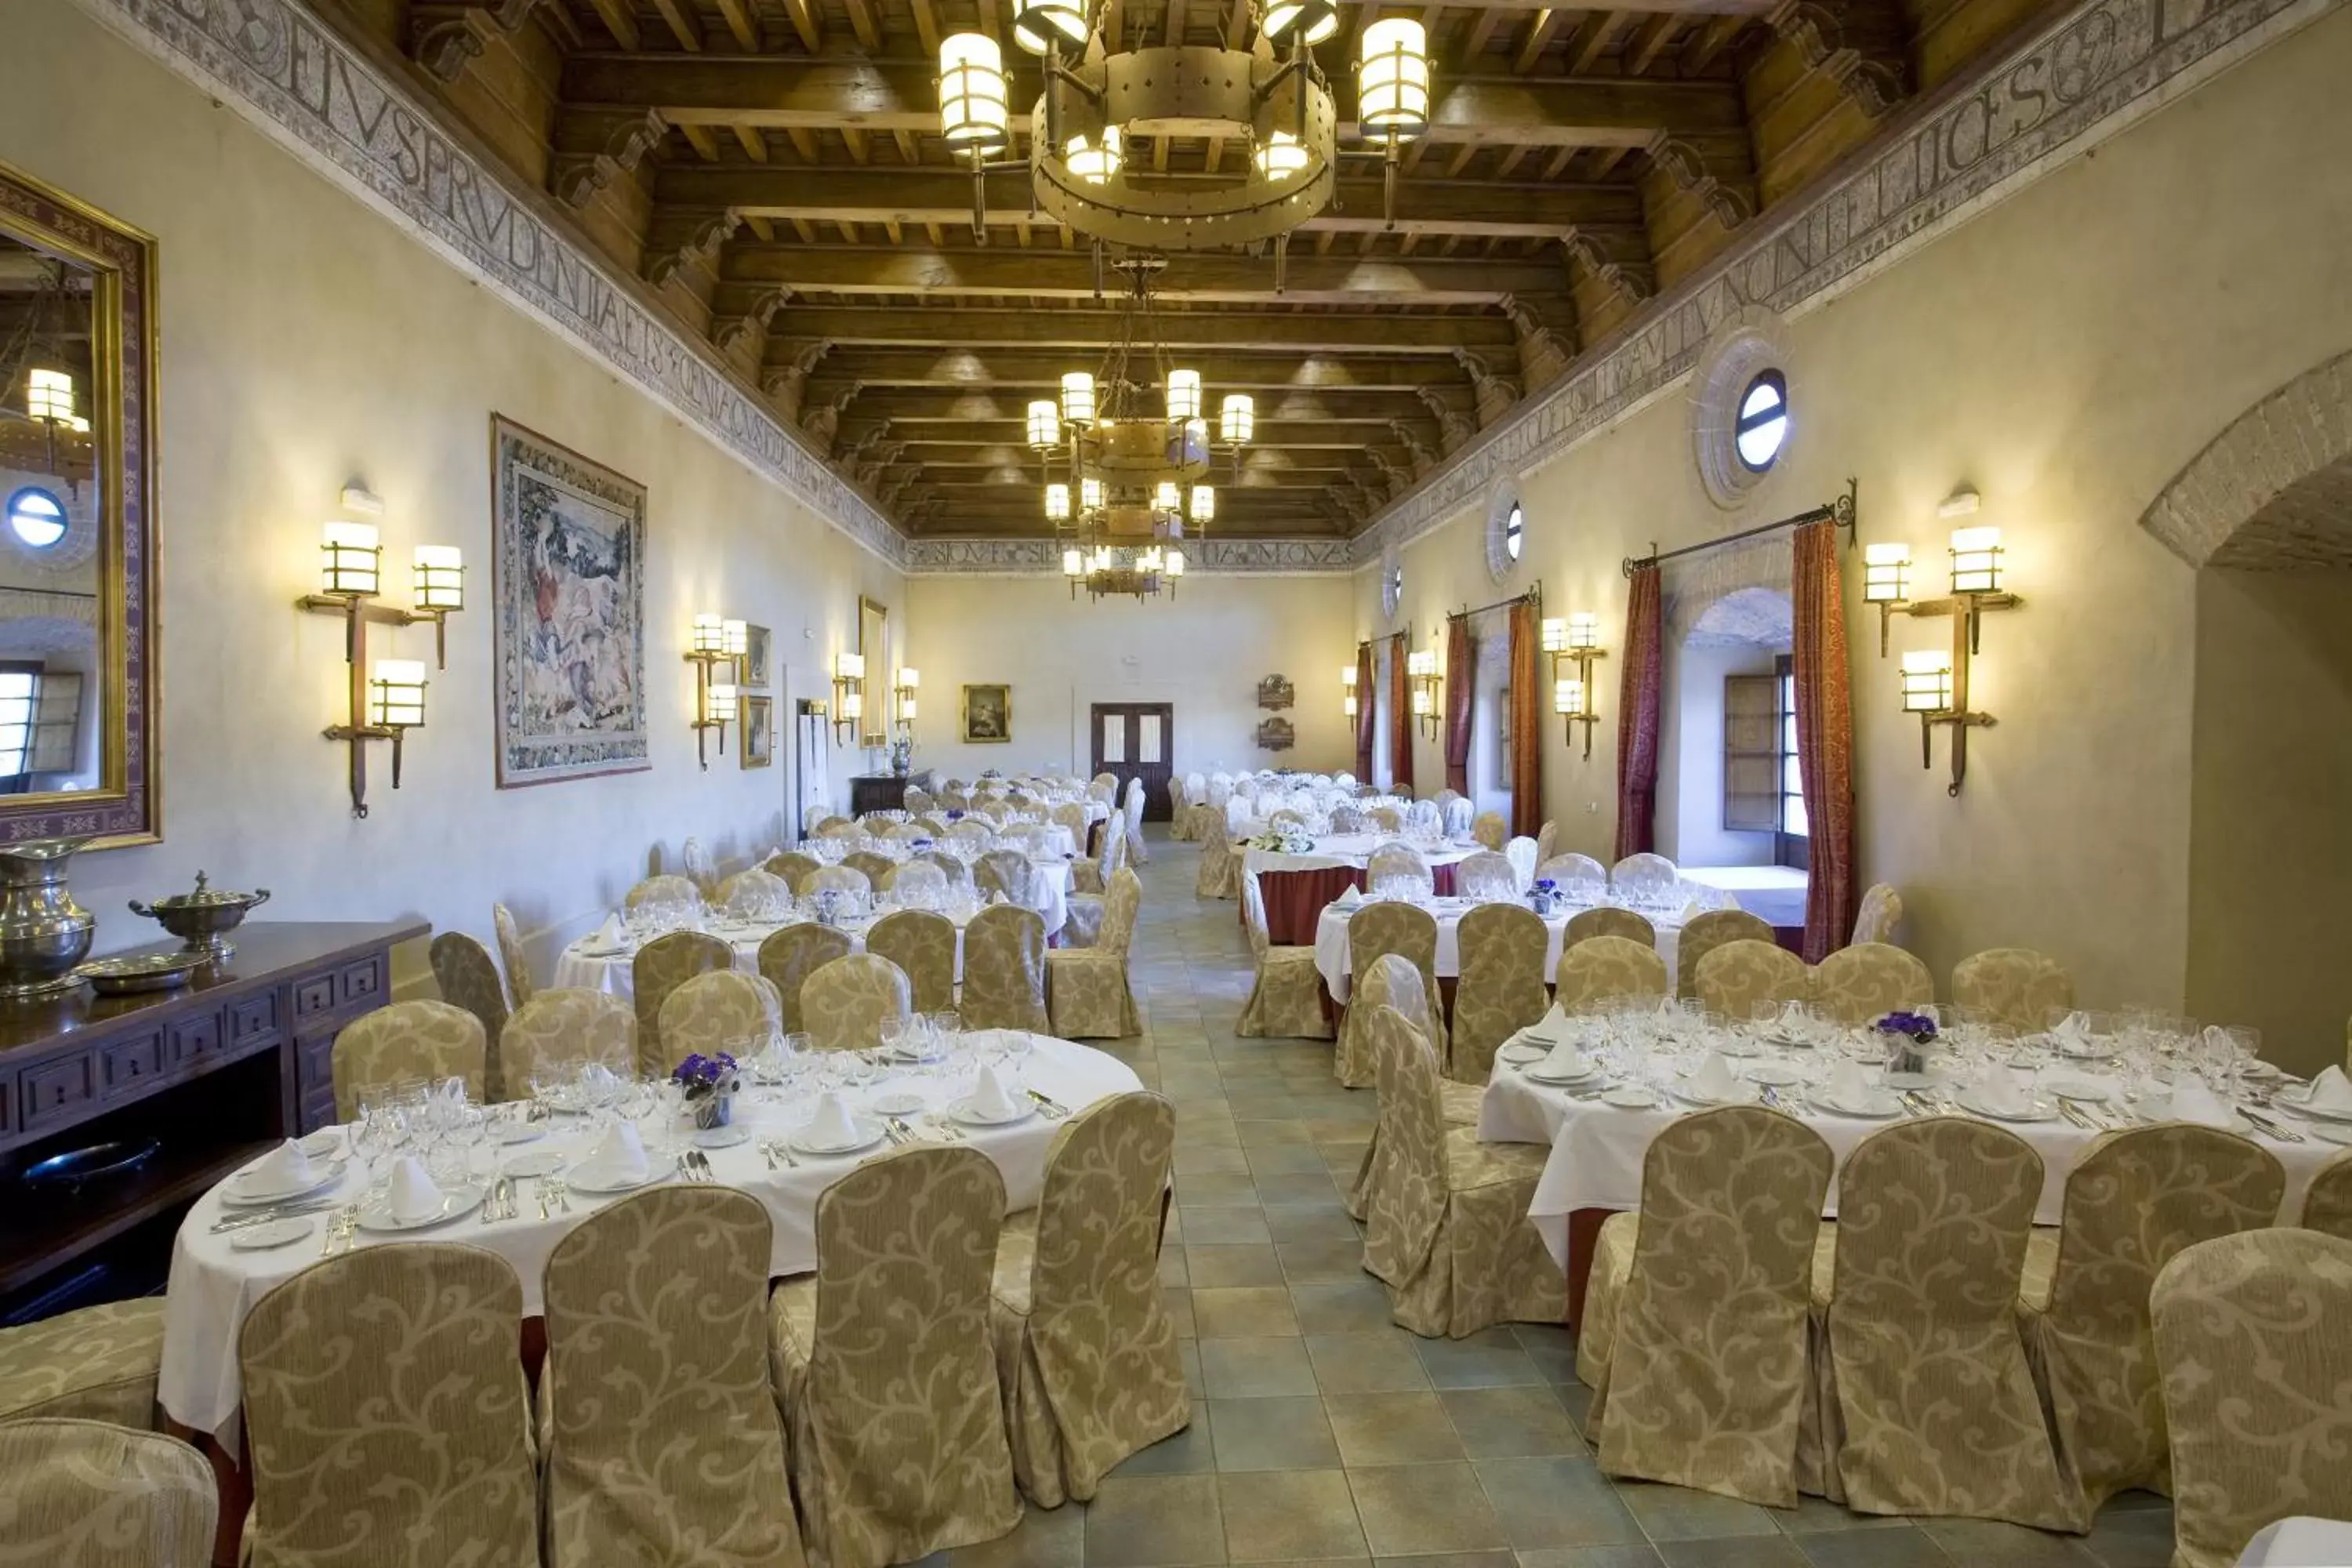 Banquet/Function facilities, Banquet Facilities in Parador de Plasencia